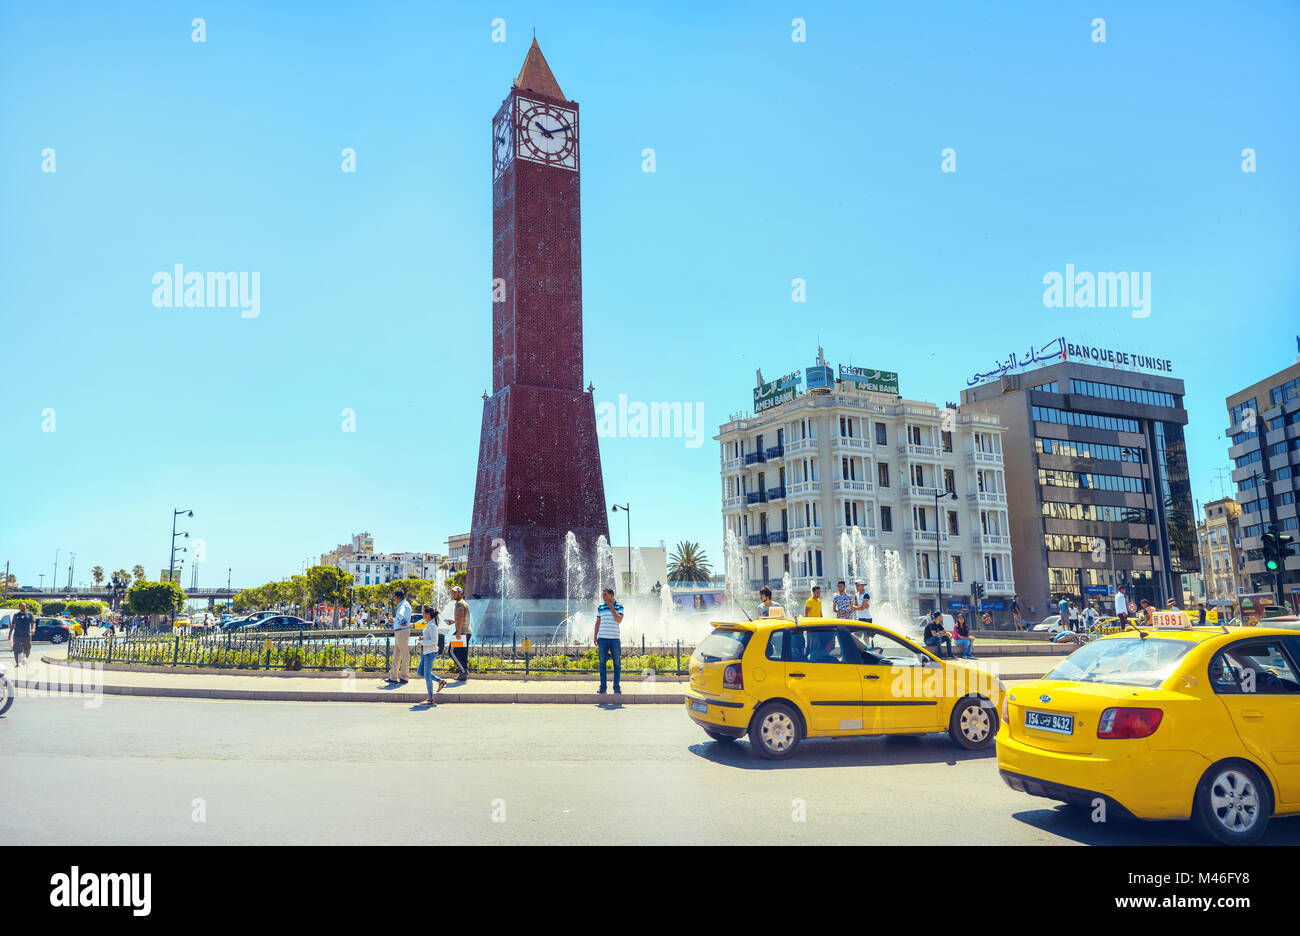 Tour de l'horloge (clock) Big Ben et fontaine sur place centrale dans le centre-ville. Tunis, Tunisie, Afrique du Nord Banque D'Images